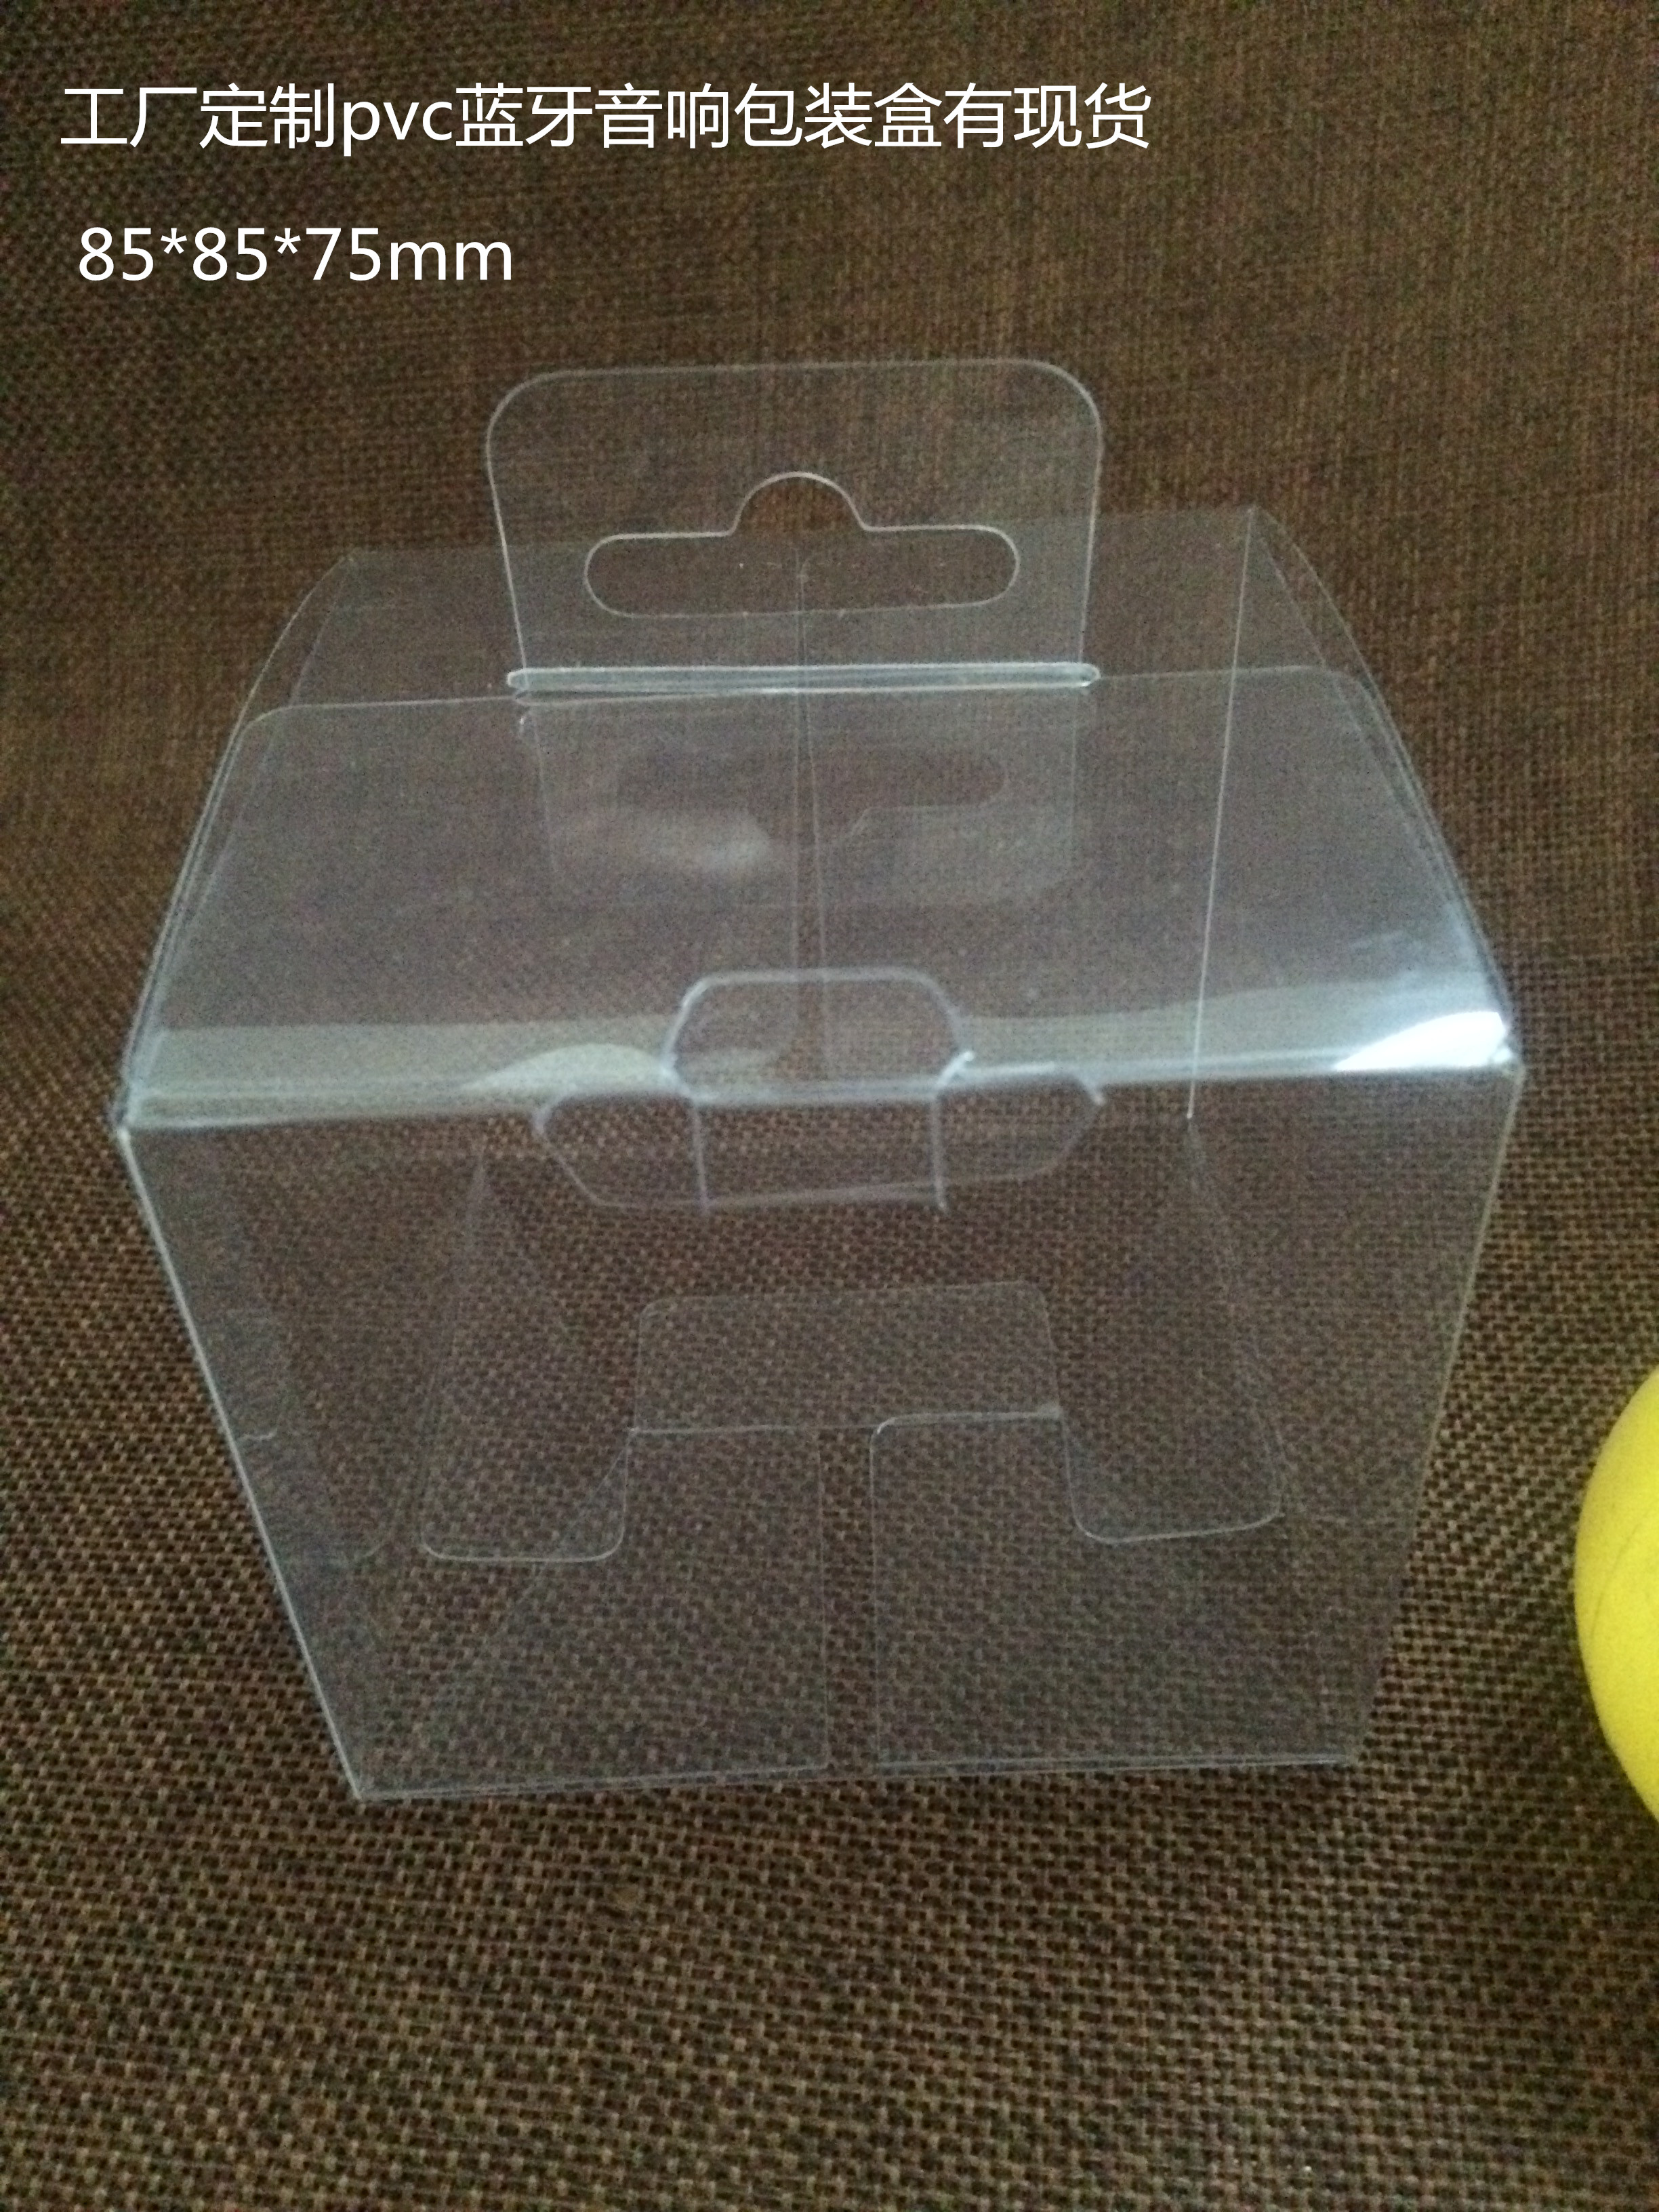 东莞厂家直销pvc透明蘑菇蓝牙音响包装盒方形塑料胶盒10个起批有现货图片